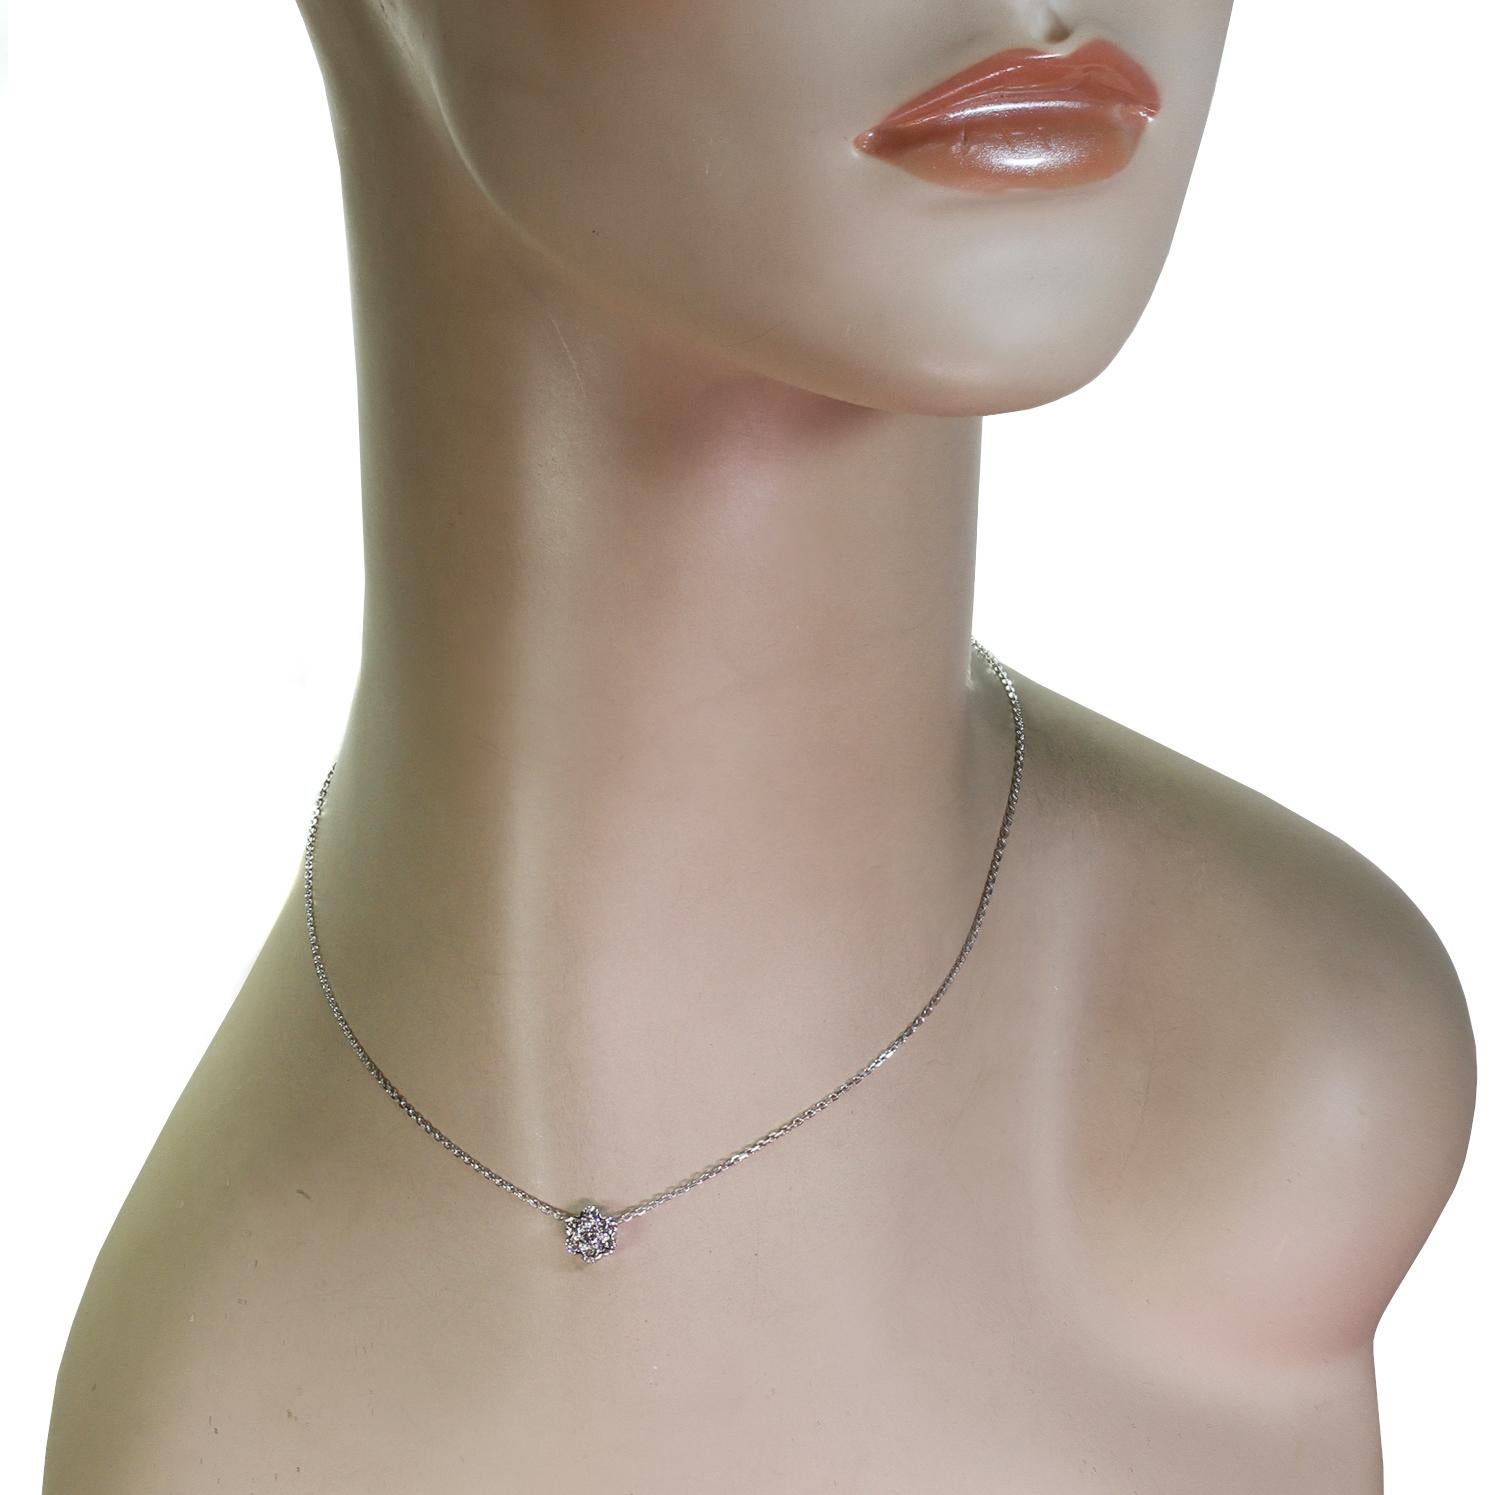 Brilliant Cut Van Cleef & Arpels Fleurette Diamond White Gold Small Pendant Necklace